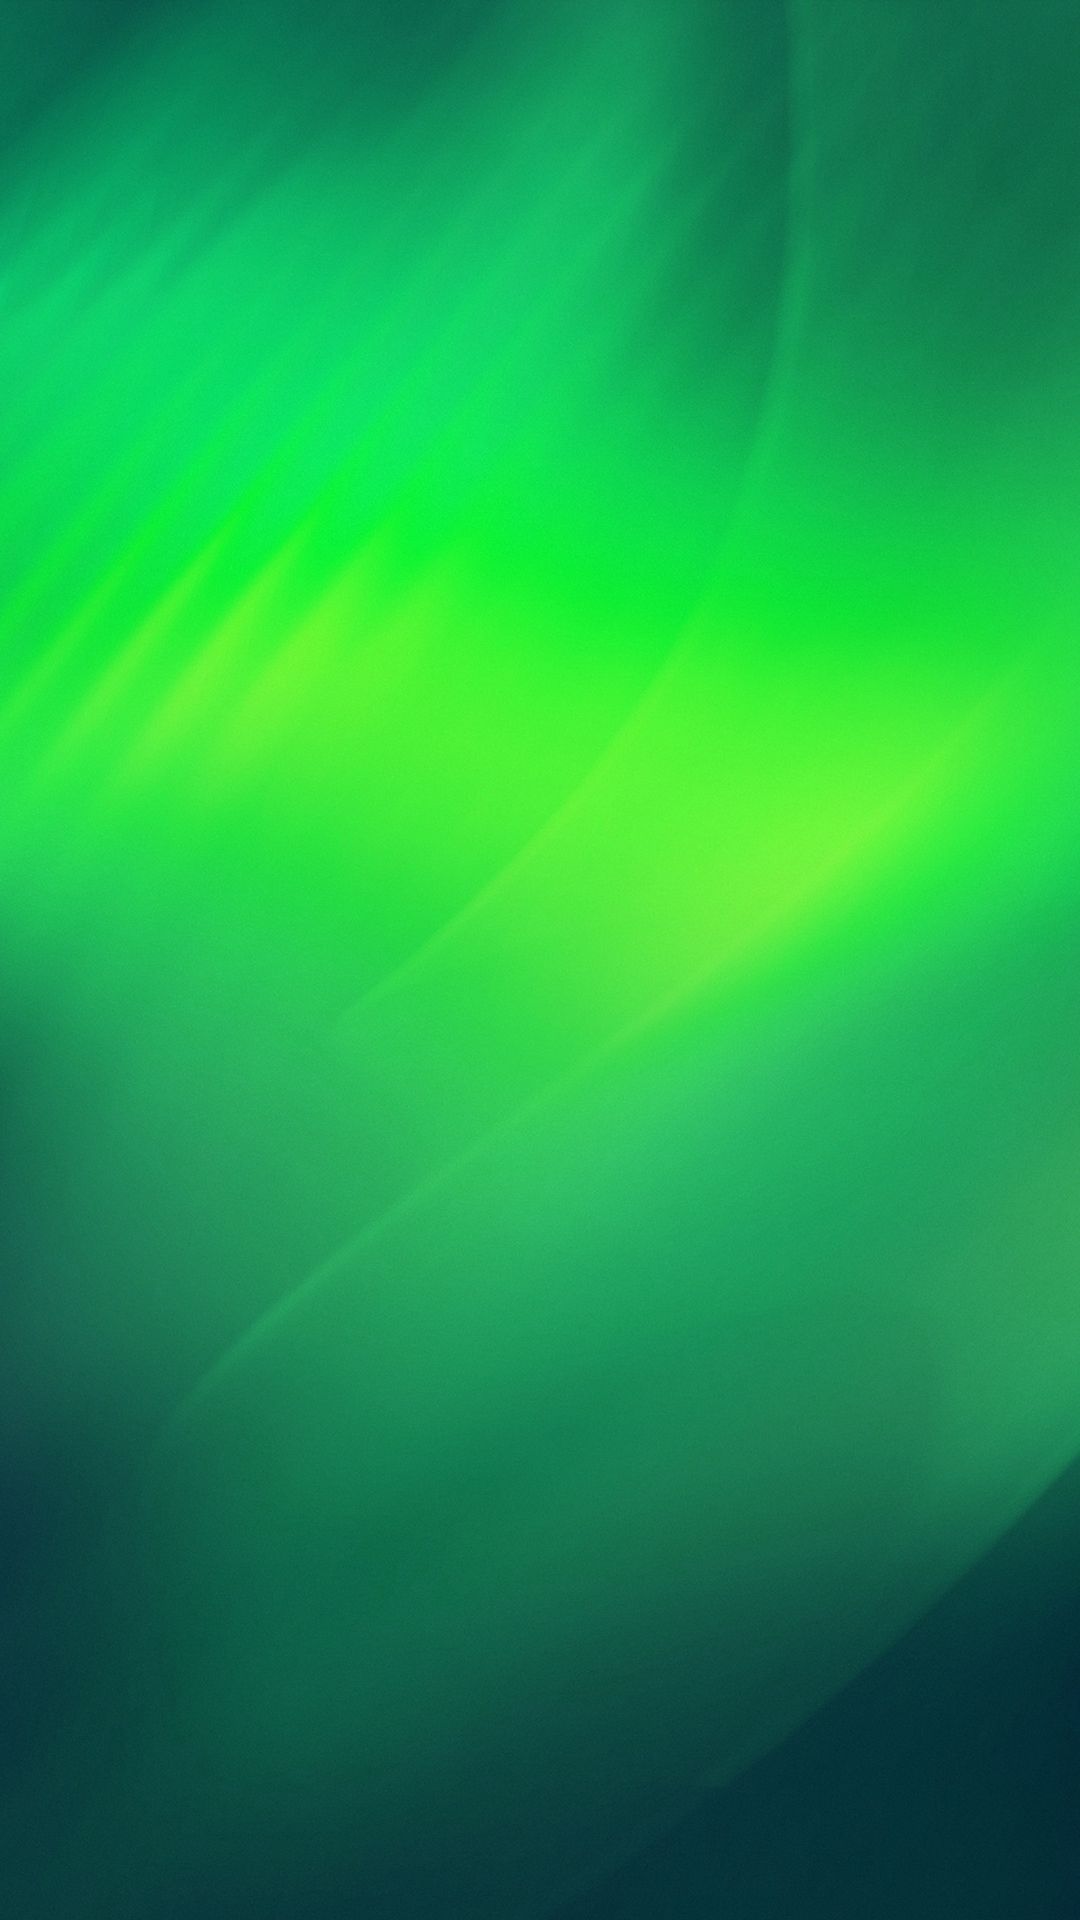 Abstract Iphone Green Wallpaper - KibrisPDR